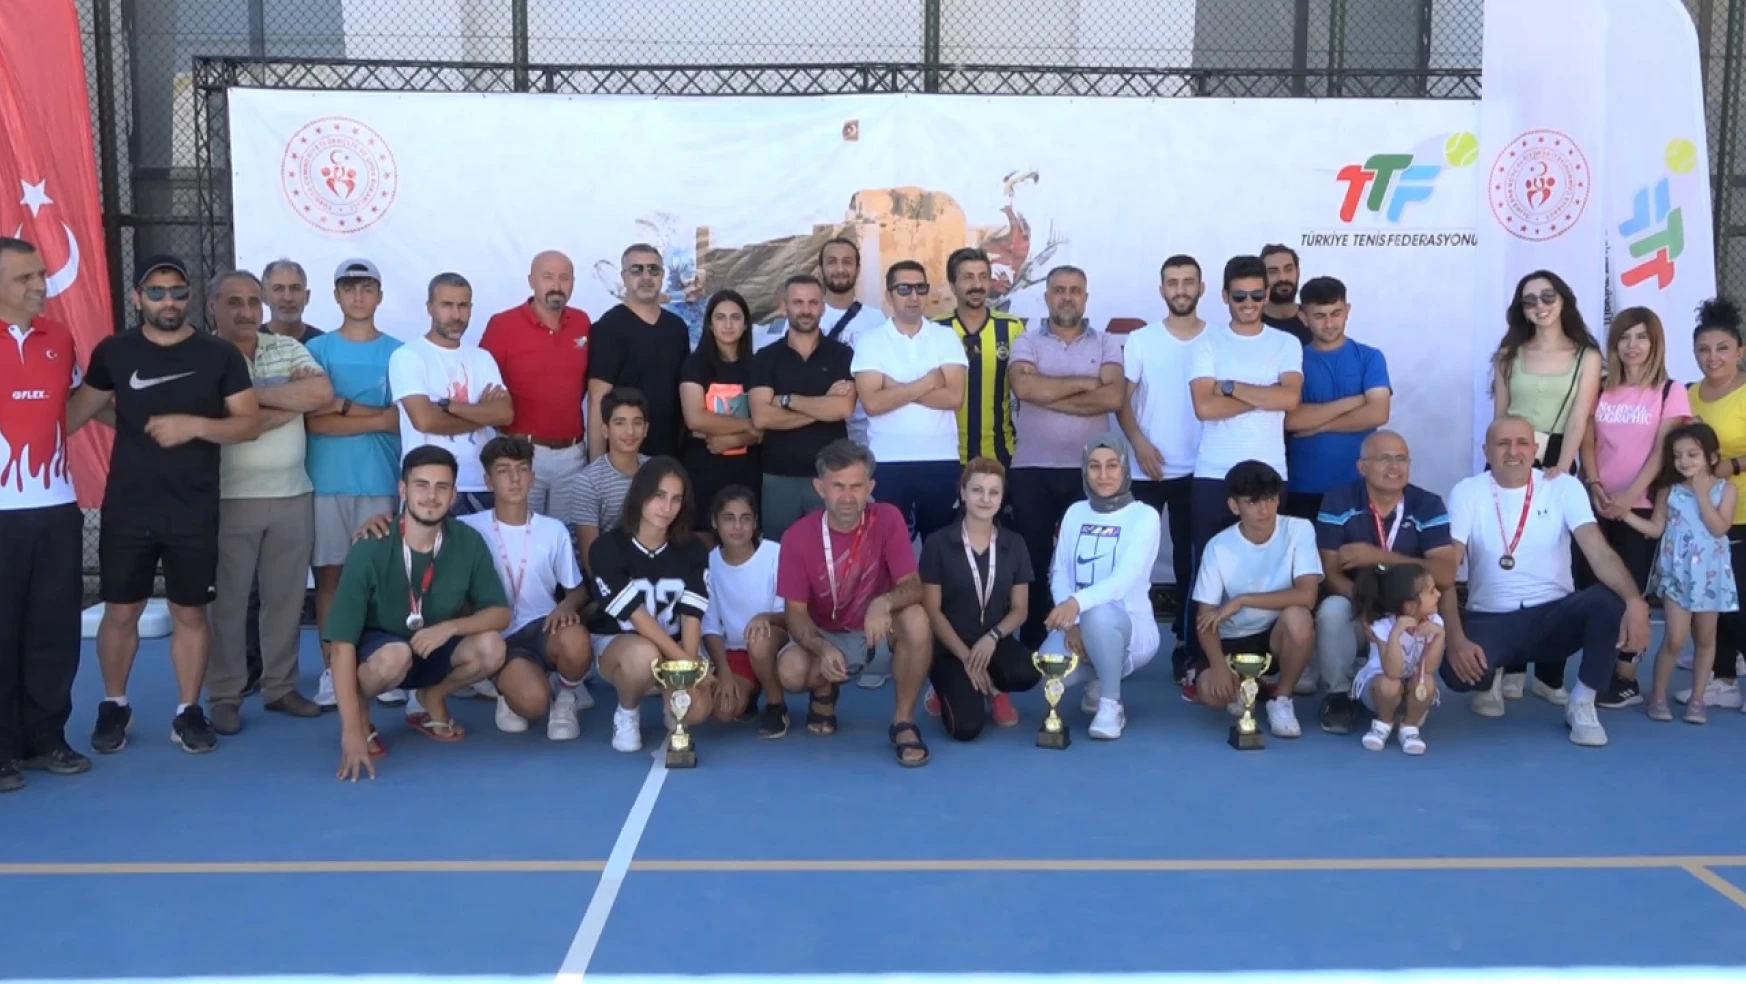 Harput cup tenis Turnuvası'nın ödül töreni gerçekleşti